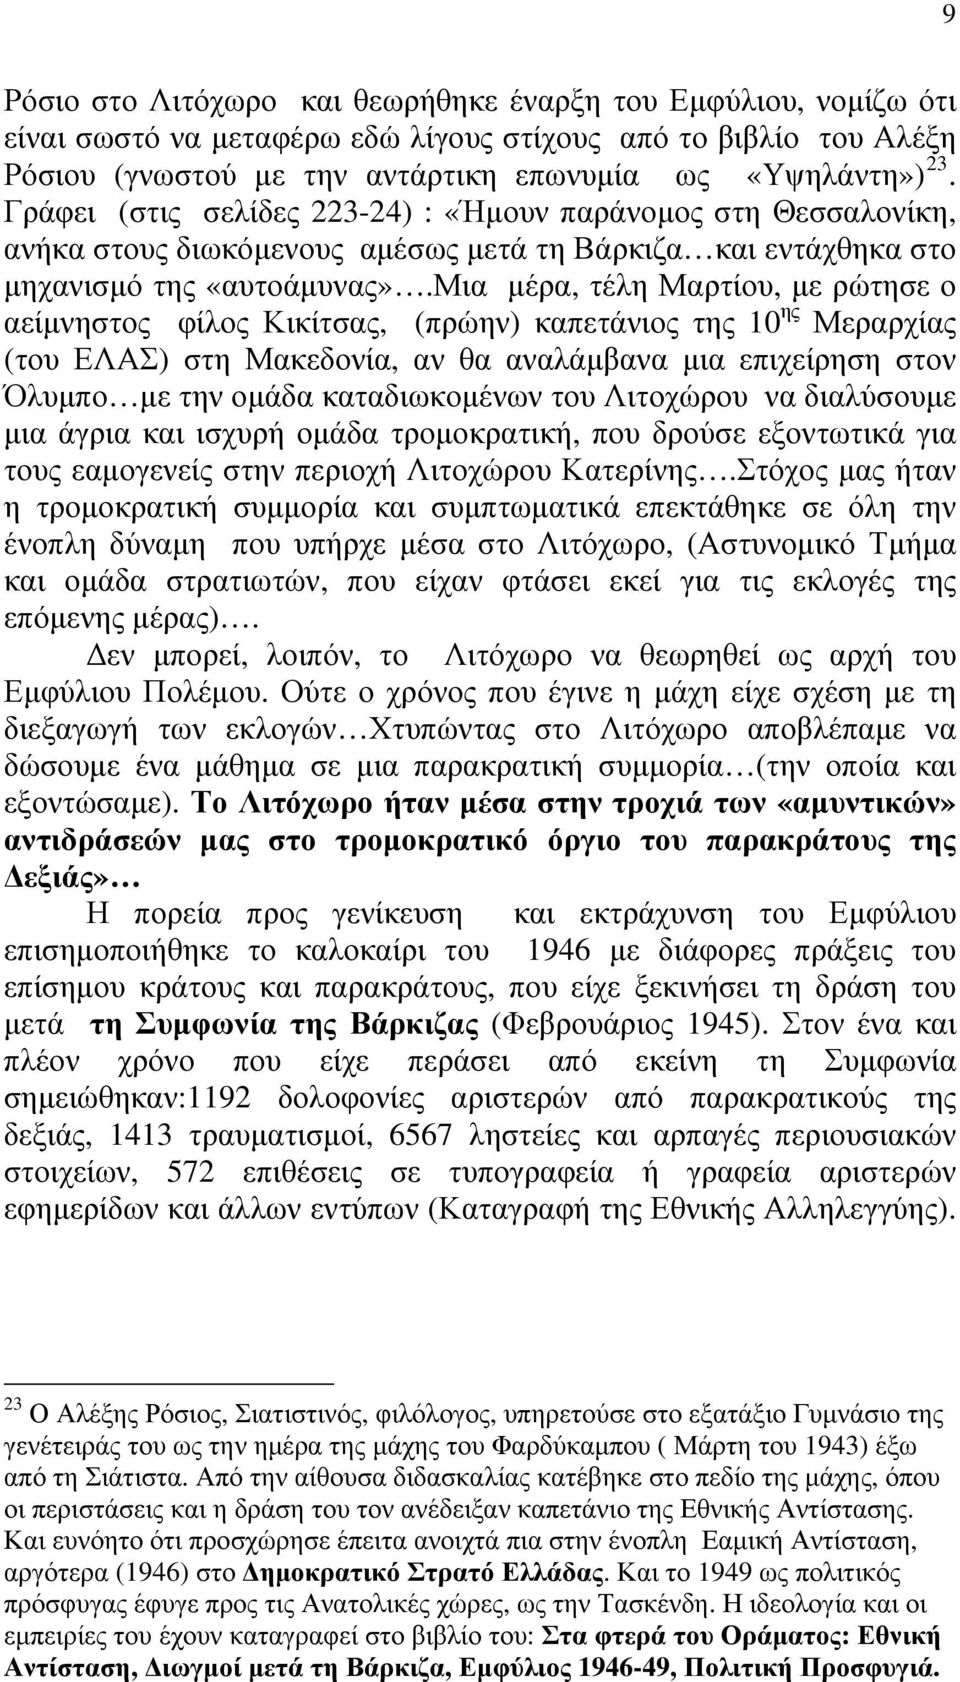 μια μέρα, τέλη Μαρτίου, με ρώτησε ο αείμνηστος φίλος Κικίτσας, (πρώην) καπετάνιος της 10 ης Μεραρχίας (του ΕΛΑΣ) στη Μακεδονία, αν θα αναλάμβανα μια επιχείρηση στον Όλυμπο με την ομάδα καταδιωκομένων